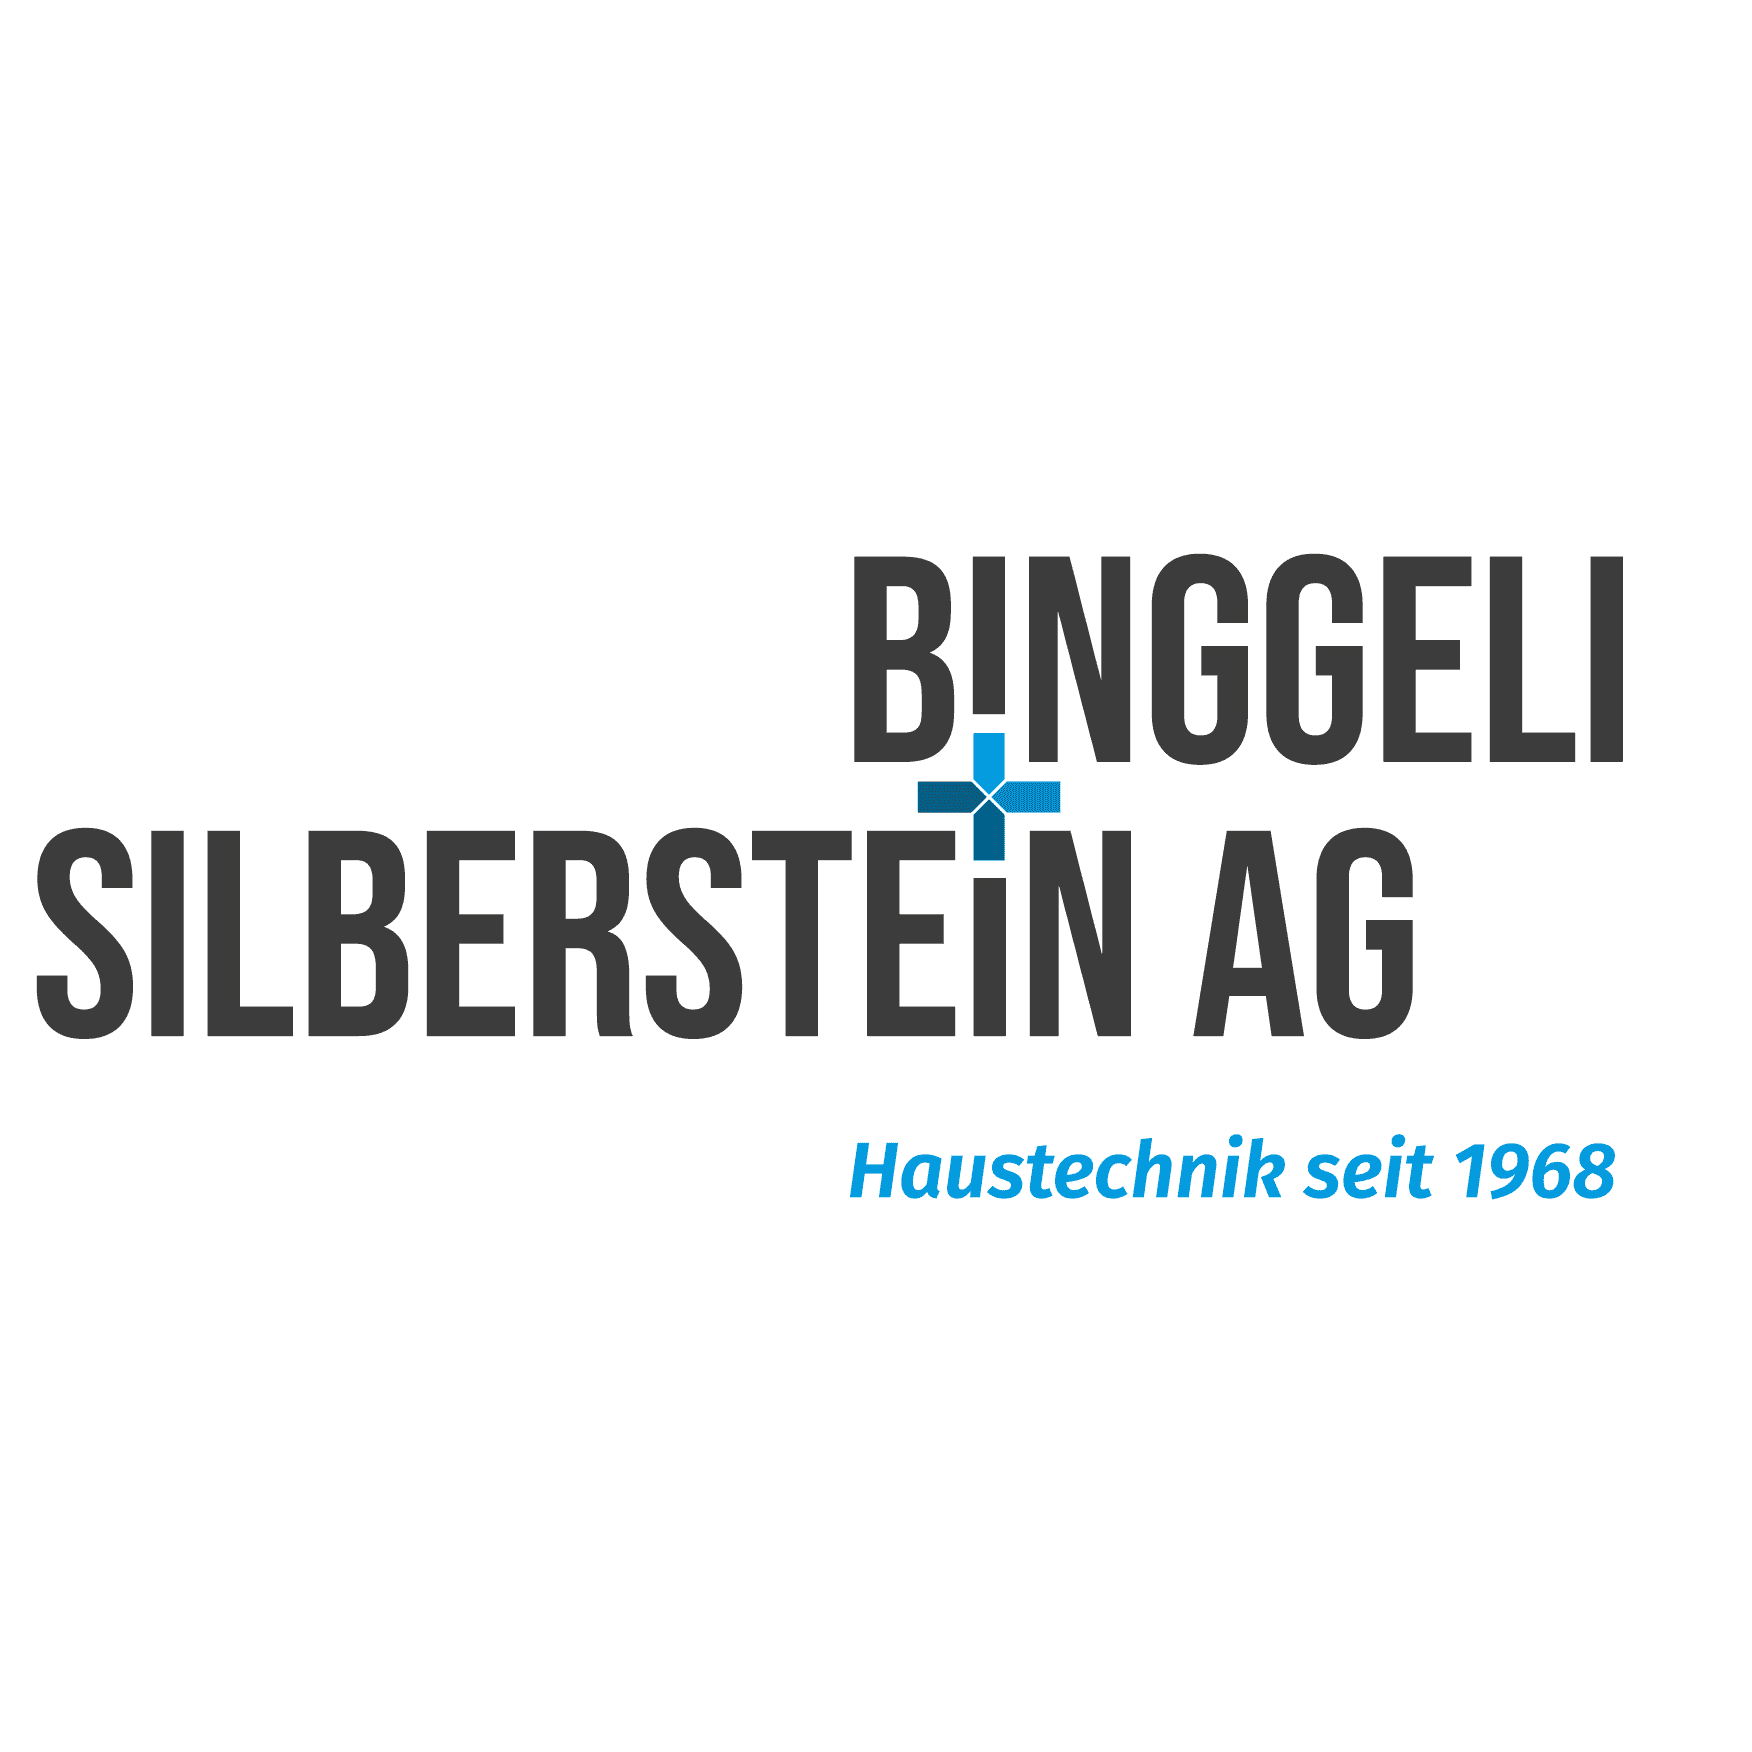 Binggeli und Silberstein AG